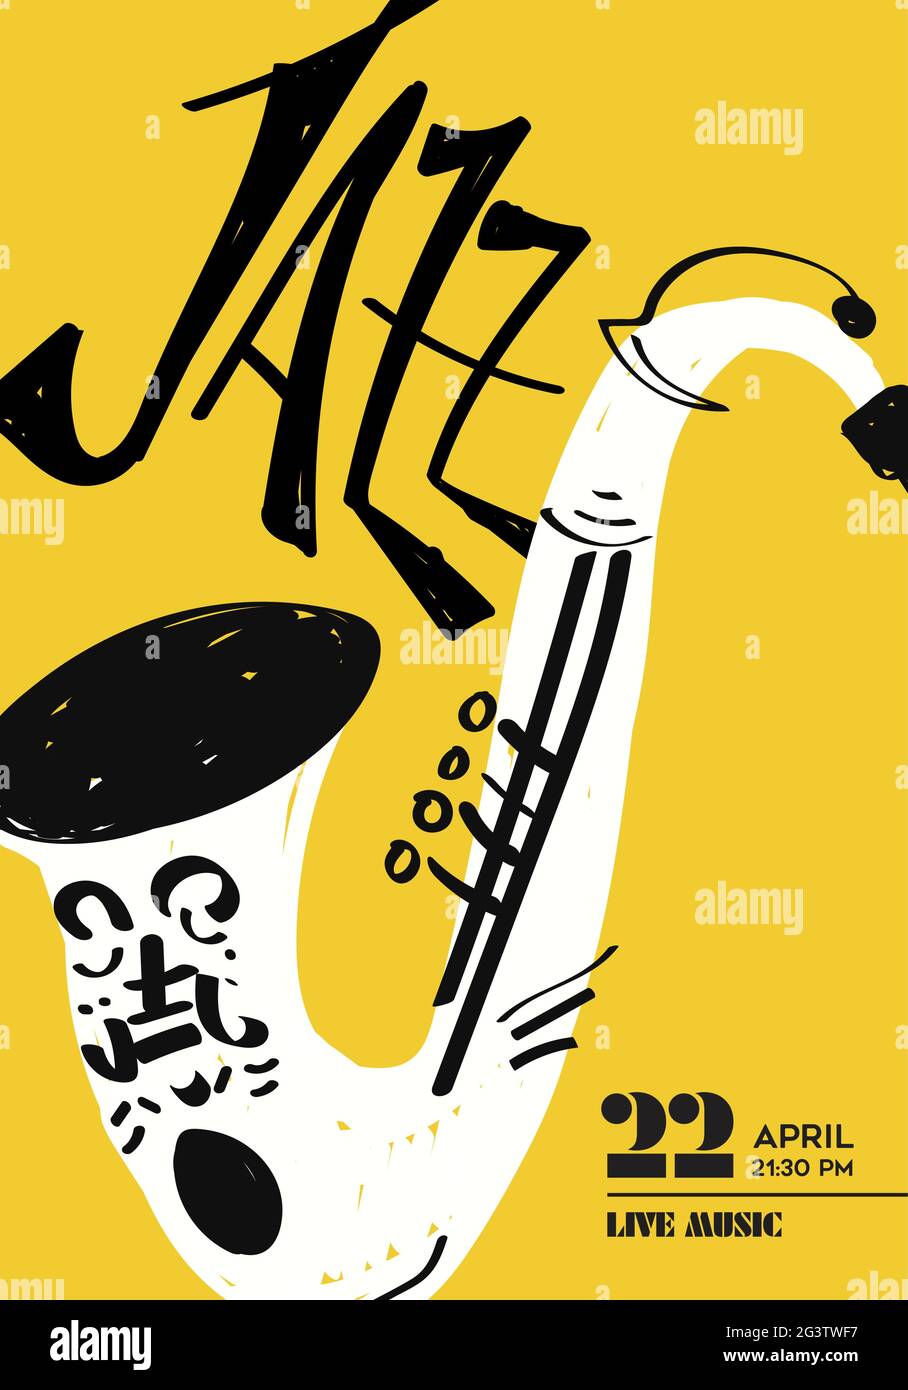 Jazz-Musik-Poster Illustration von lustigen Saxophon-Instrument von Hand gezeichnete Doodle. Vorlage für musikalische Konzertveranstaltungen für Nachtclub oder Festivalparty. Stock Vektor